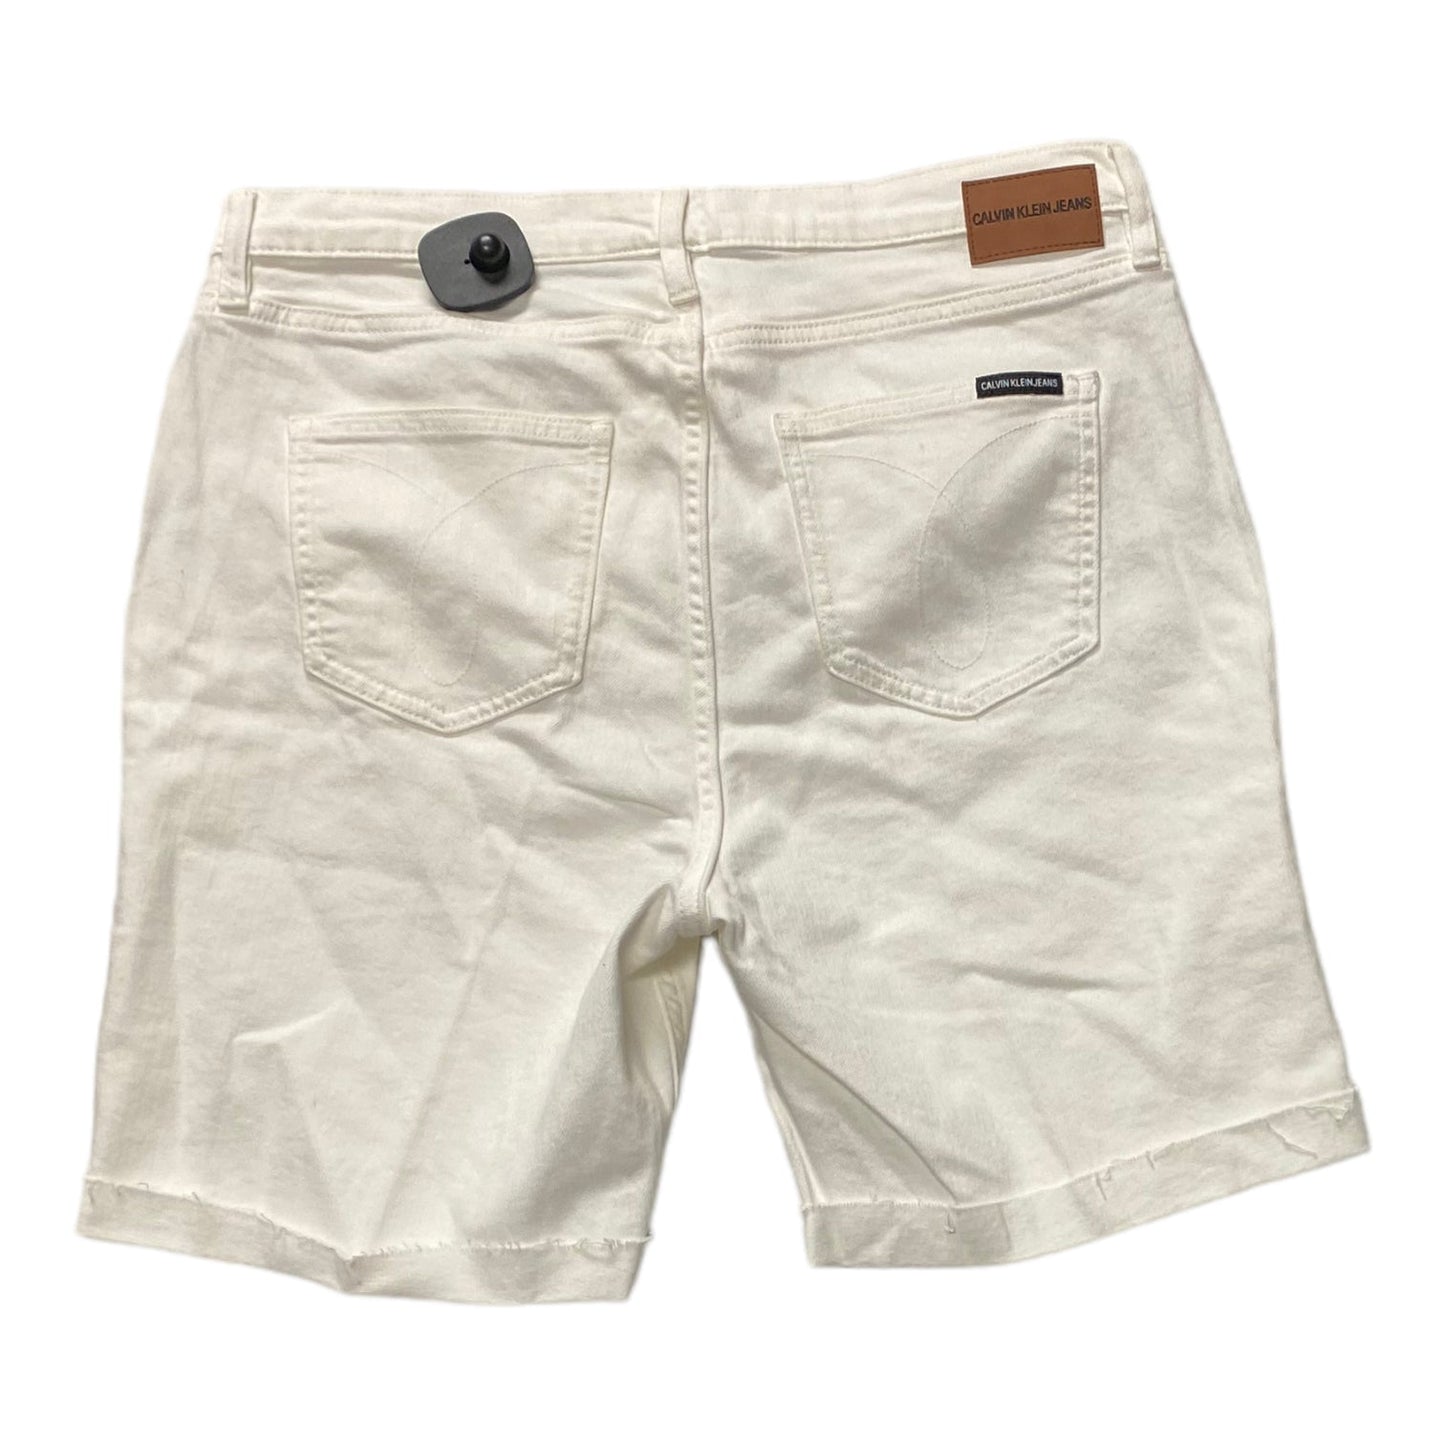 White Shorts Calvin Klein, Size 12